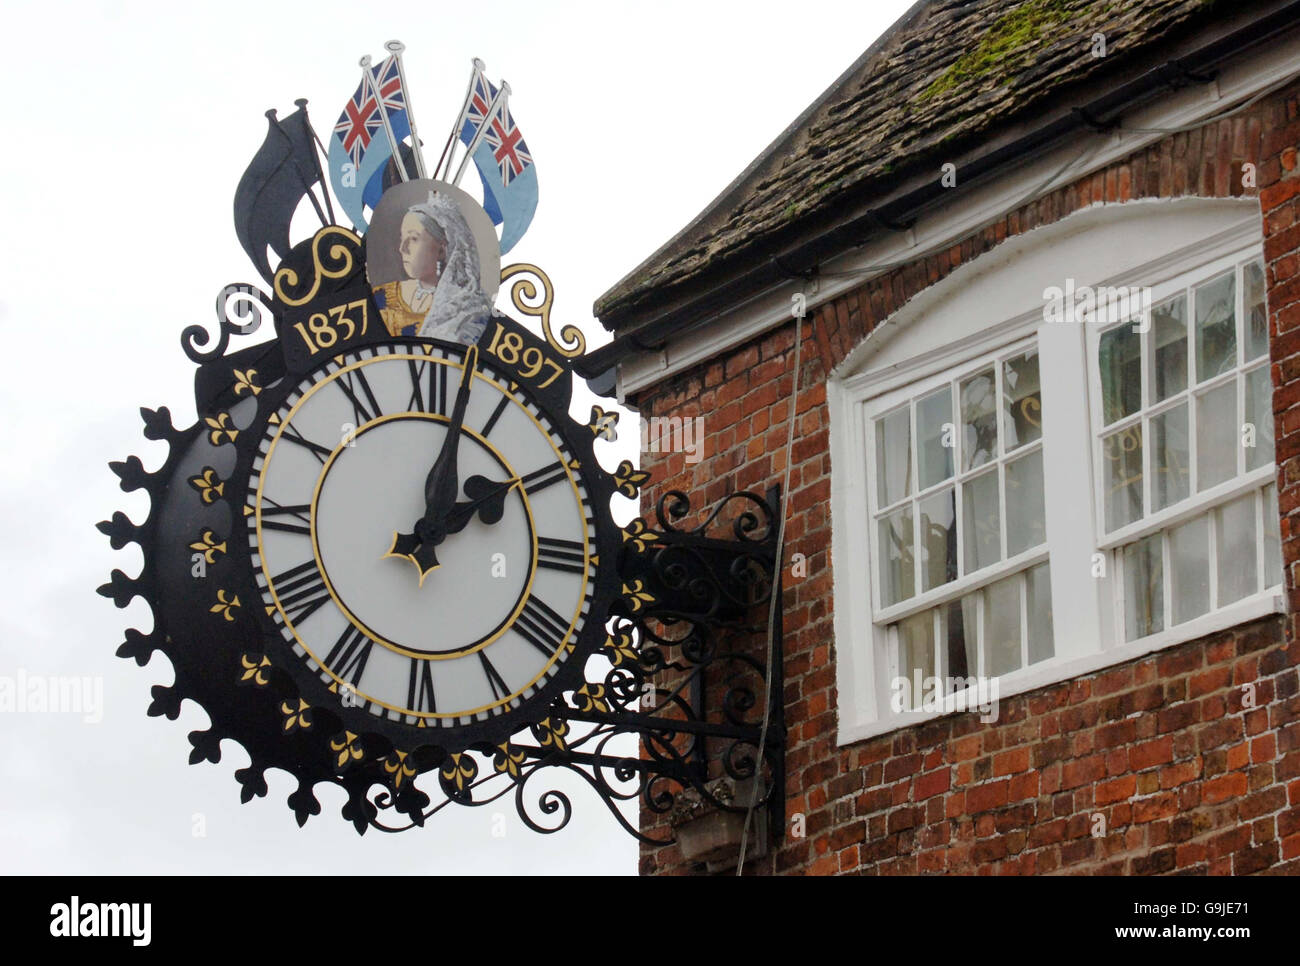 L'orologio di Tolsey a Wotton-Under-Edge, Gloucestershire come orologi tornare indietro di un'ora alle 2 di Domenica. PREMERE Foto DI ASSOCIAZIONE. Data immagine: Venerdì 27 ottobre 2006. Il credito fotografico dovrebbe essere: Barry Batchelor/PA Foto Stock